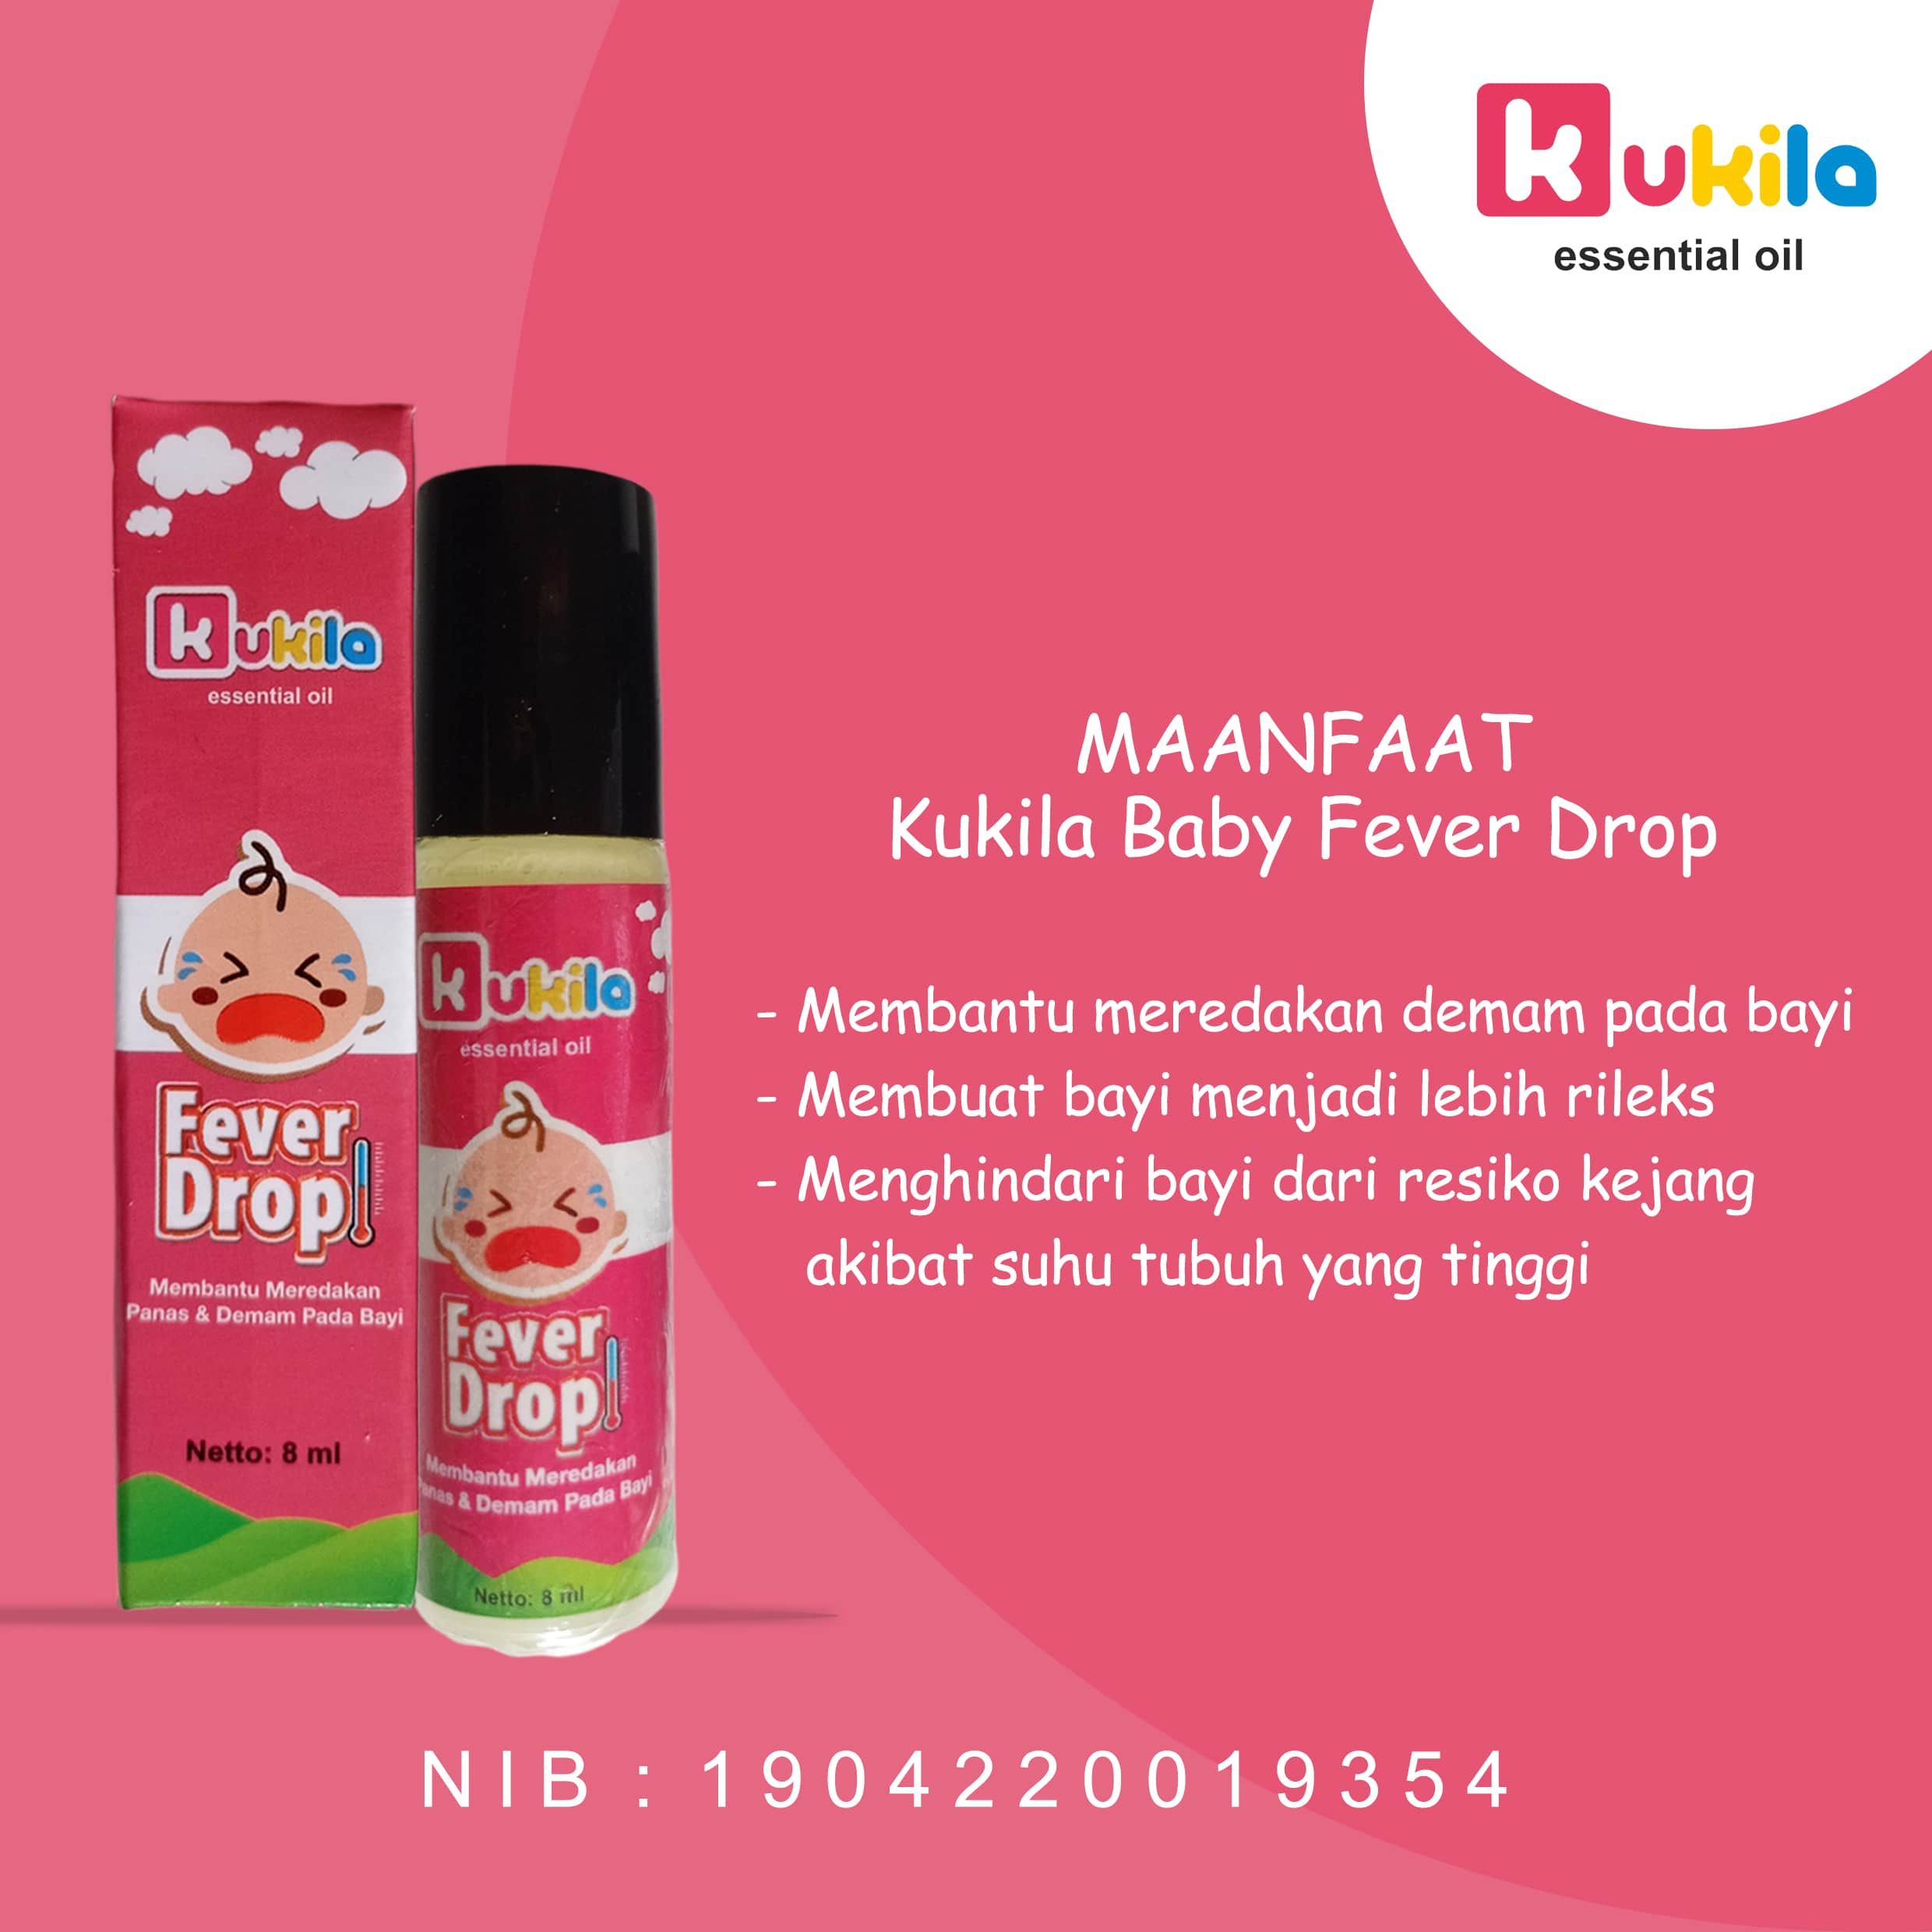 Kukila Essential Oil Baby Fever Drop 1 pcs dan Cough & Flu 4 pcs - 3